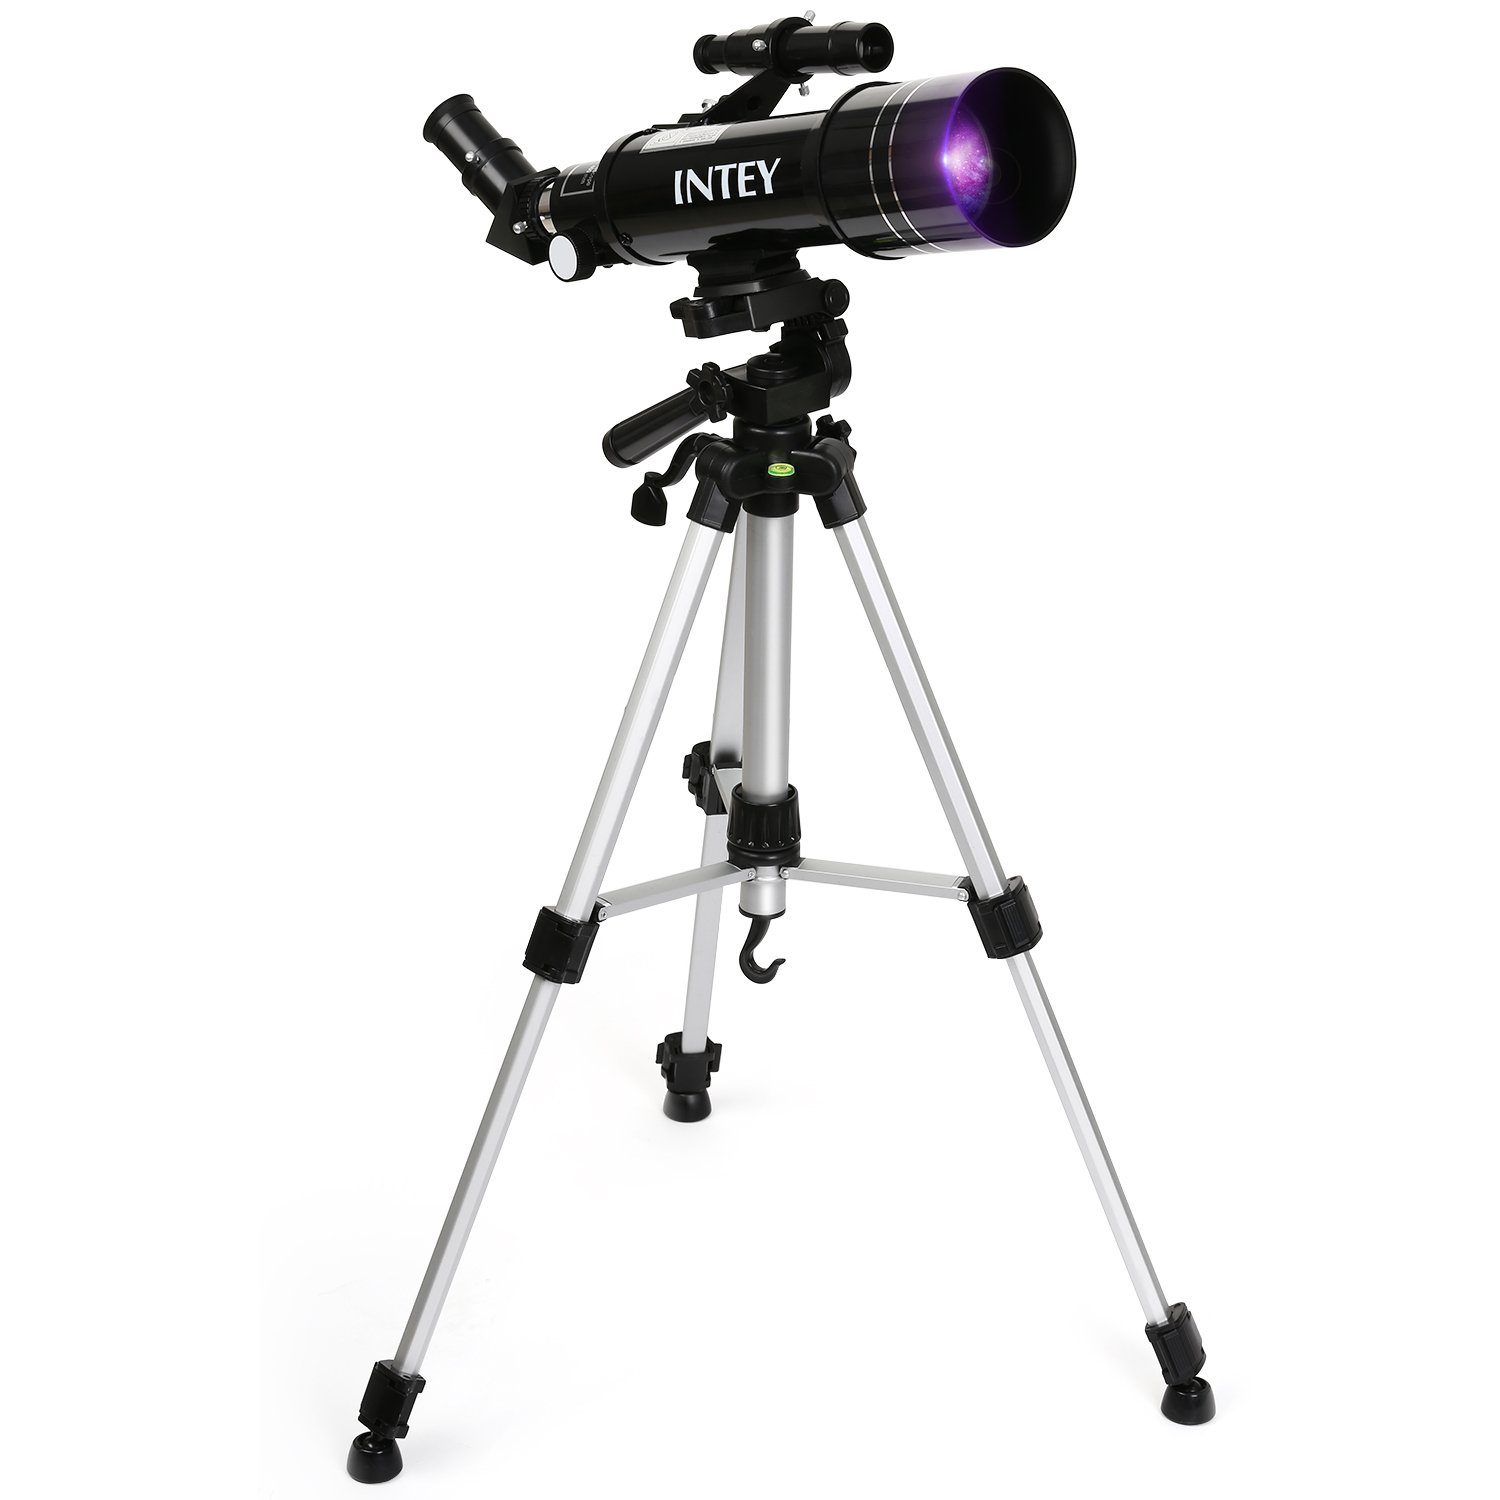 INTEY Teleskop, Astronomisch Reflektor Teleskop 6mm und 25mm Okularen